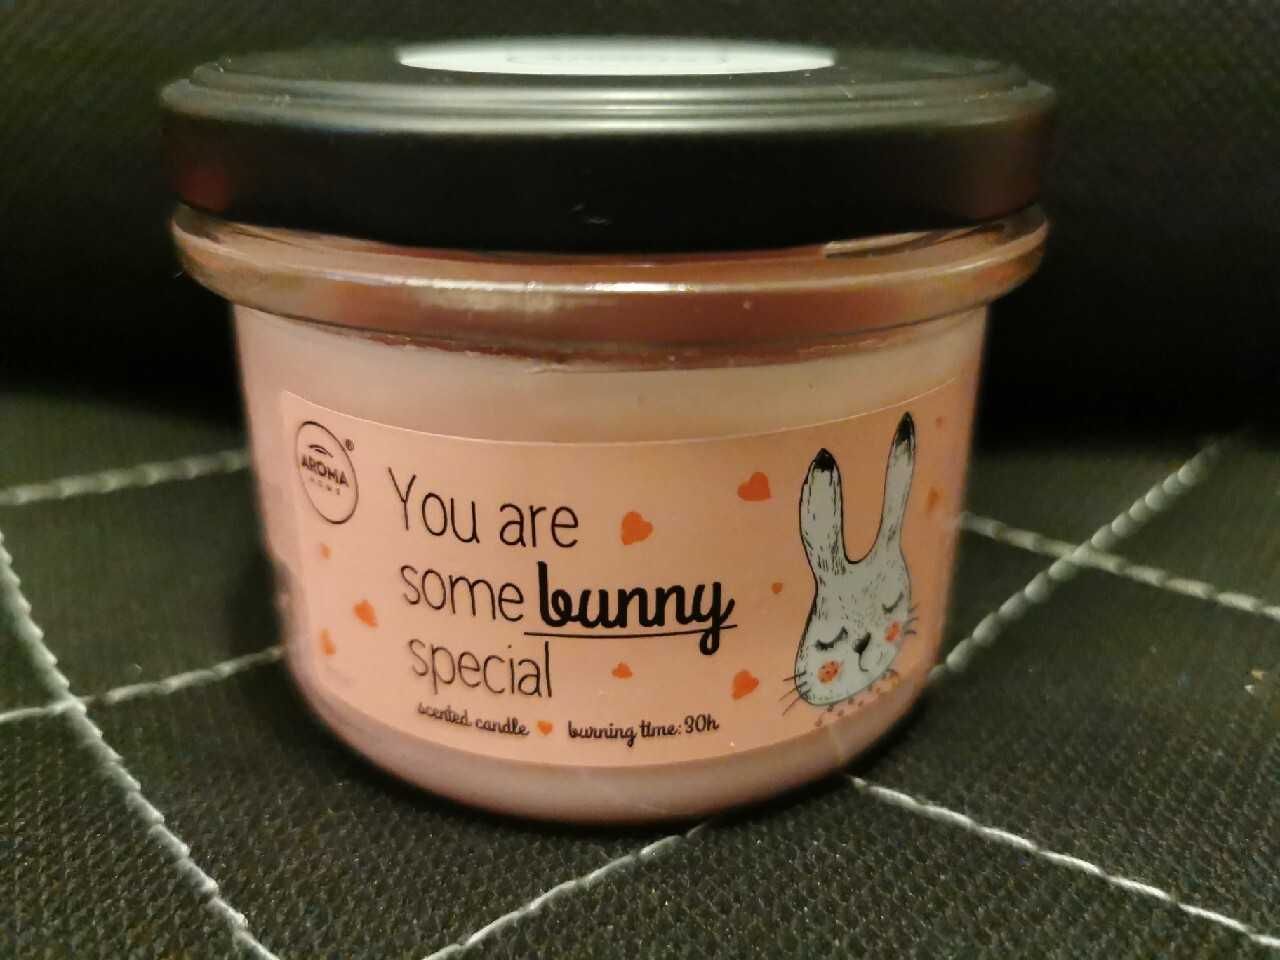 Bunny special świeca zapachowa 120g Aroma home